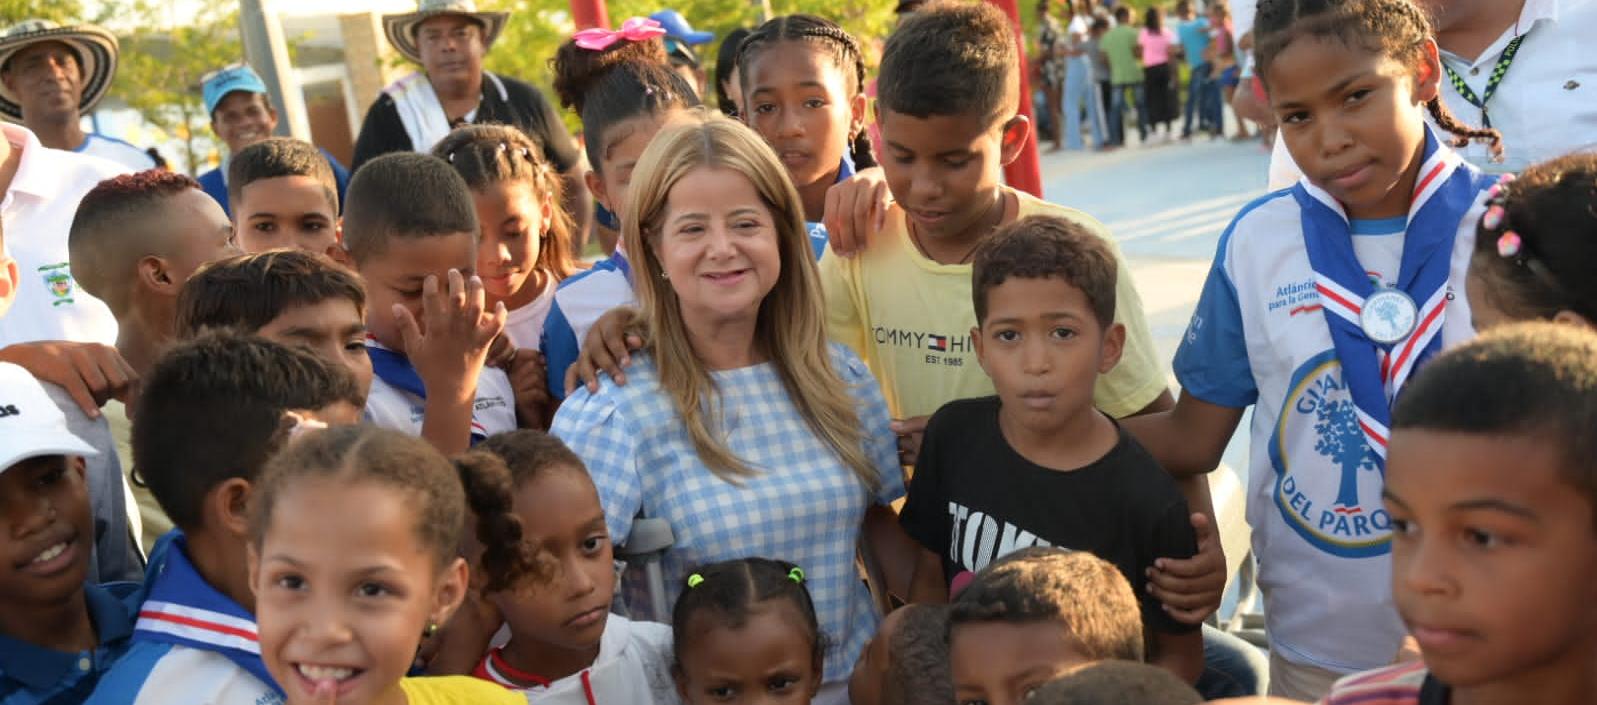 Los niños rodean a la gobernadora Elsa Noguera en la inauguración del parque en Repelón.